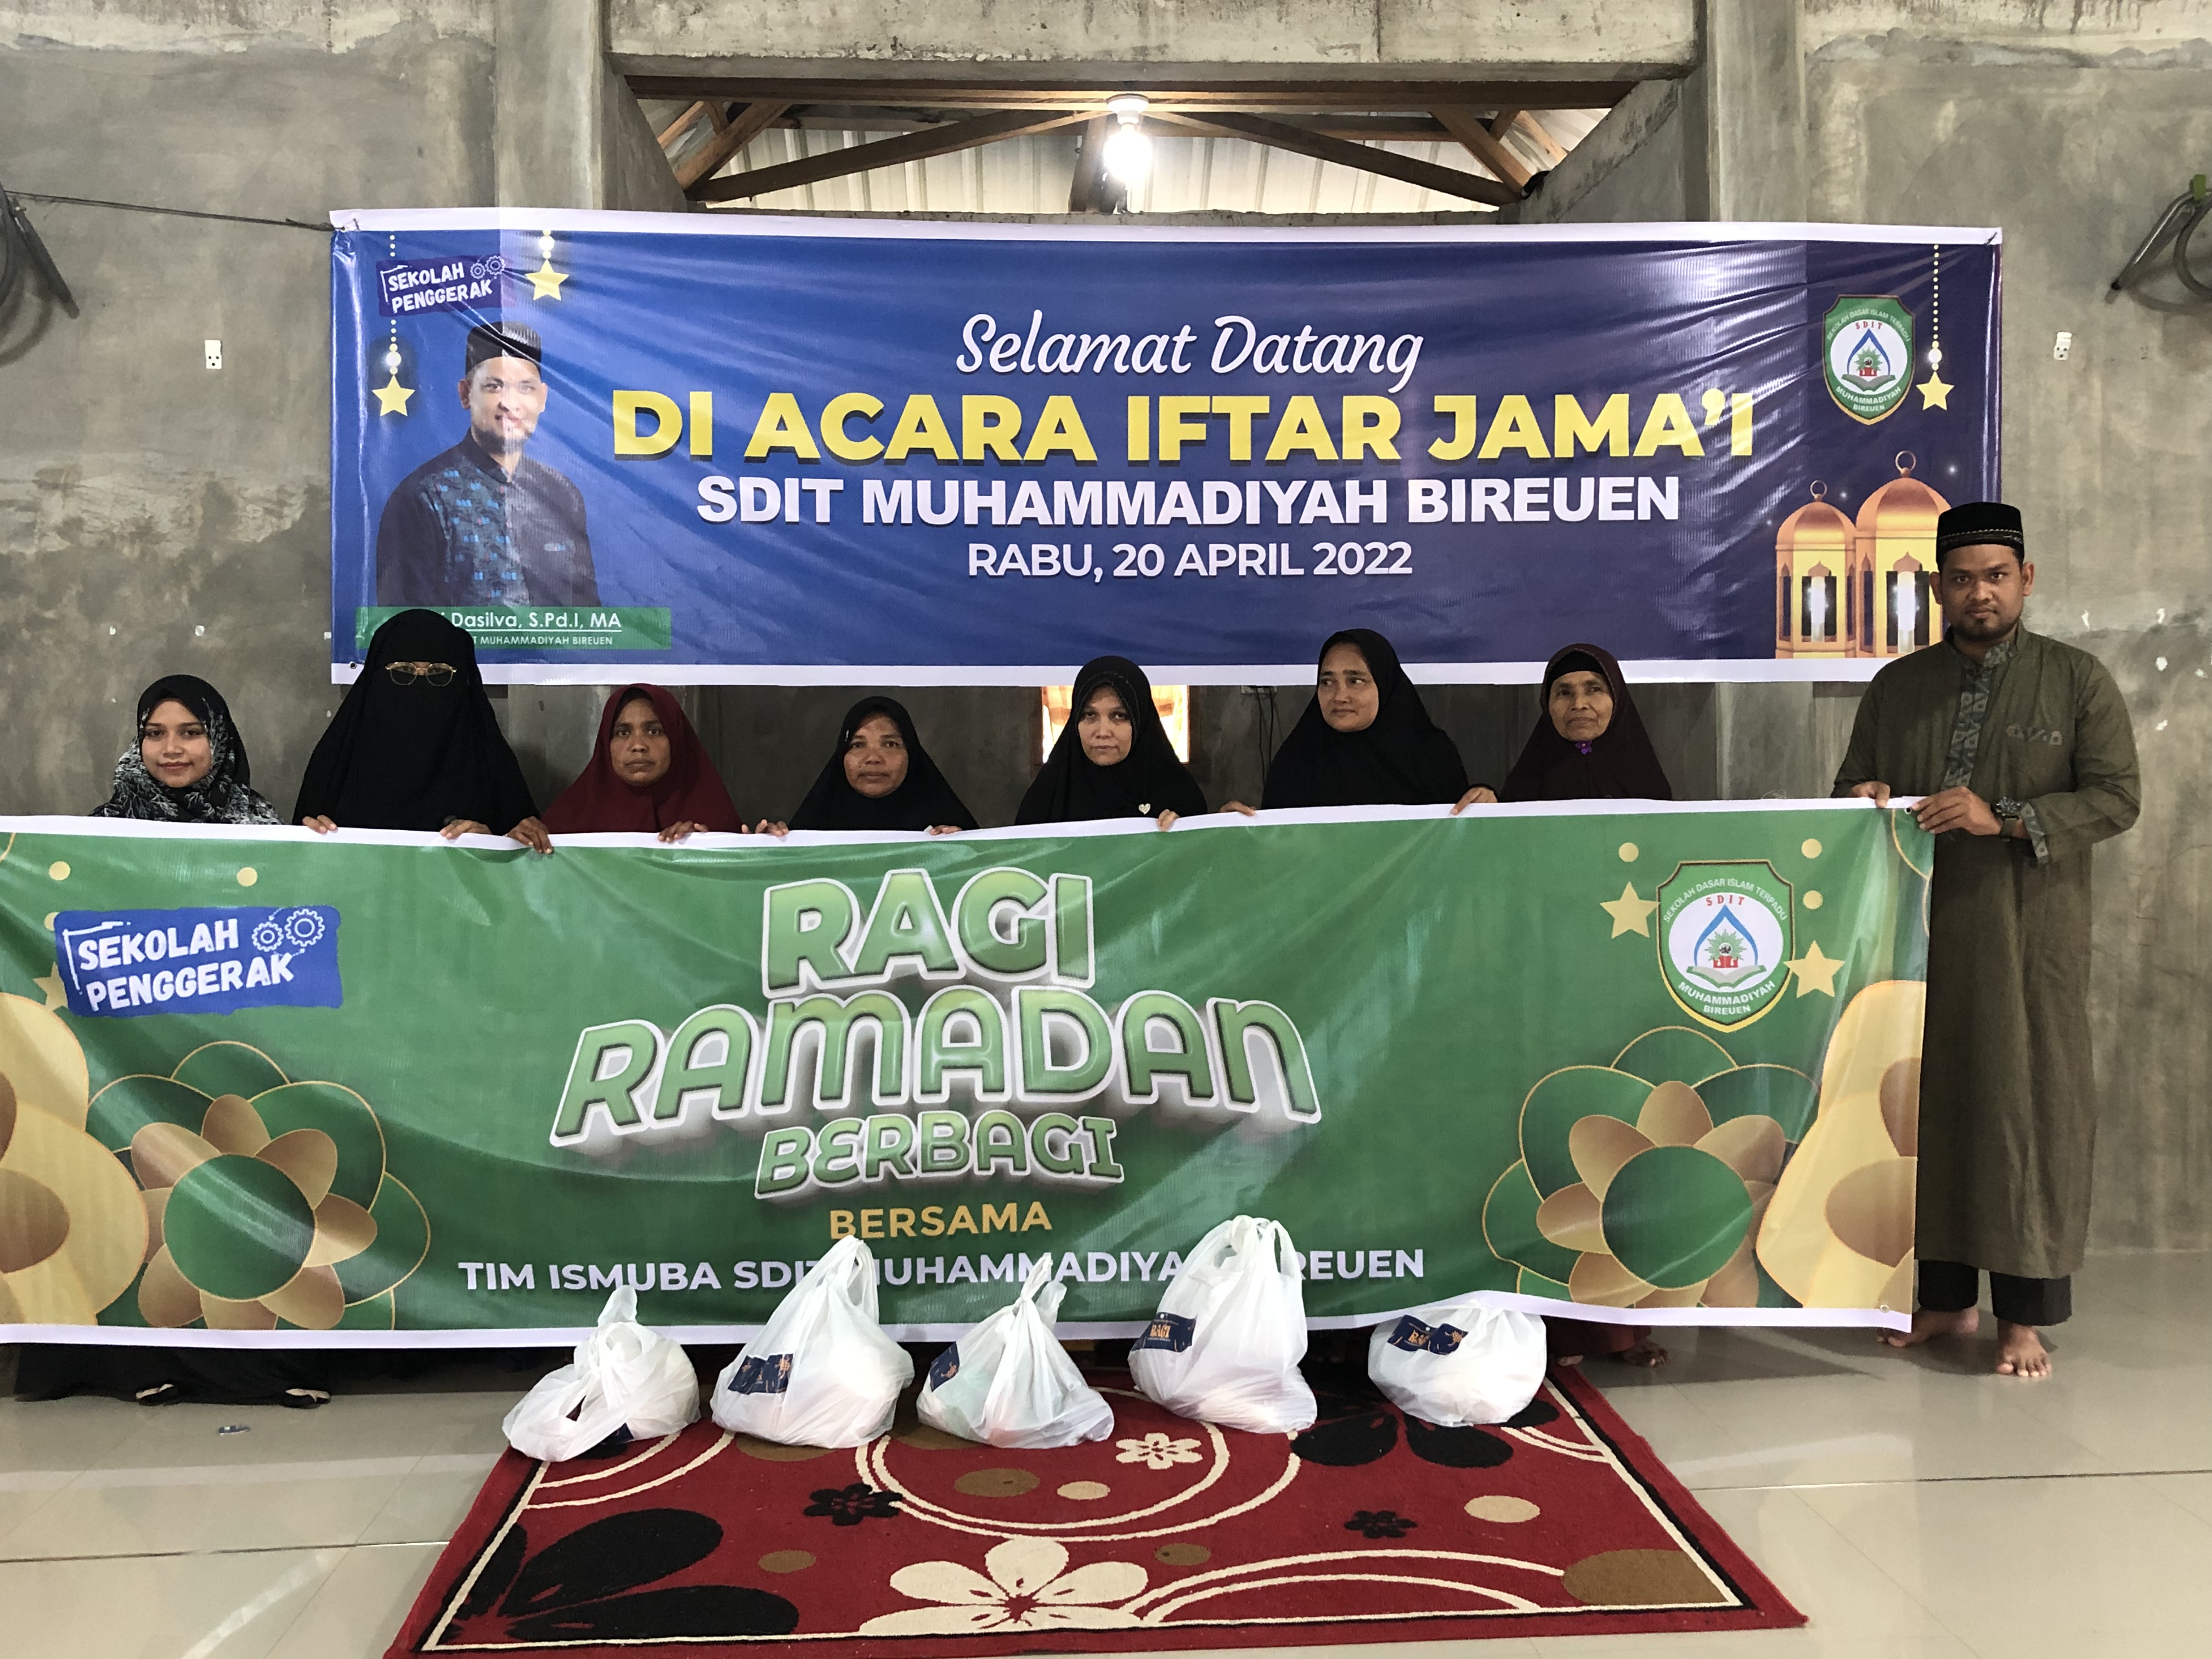 RAGI (Ramadhan Berbagai) | Waka Ismuba SDIT Muhammadiyah Bireuen Menyalurkan 100 Paket Sembako Untuk Duafa